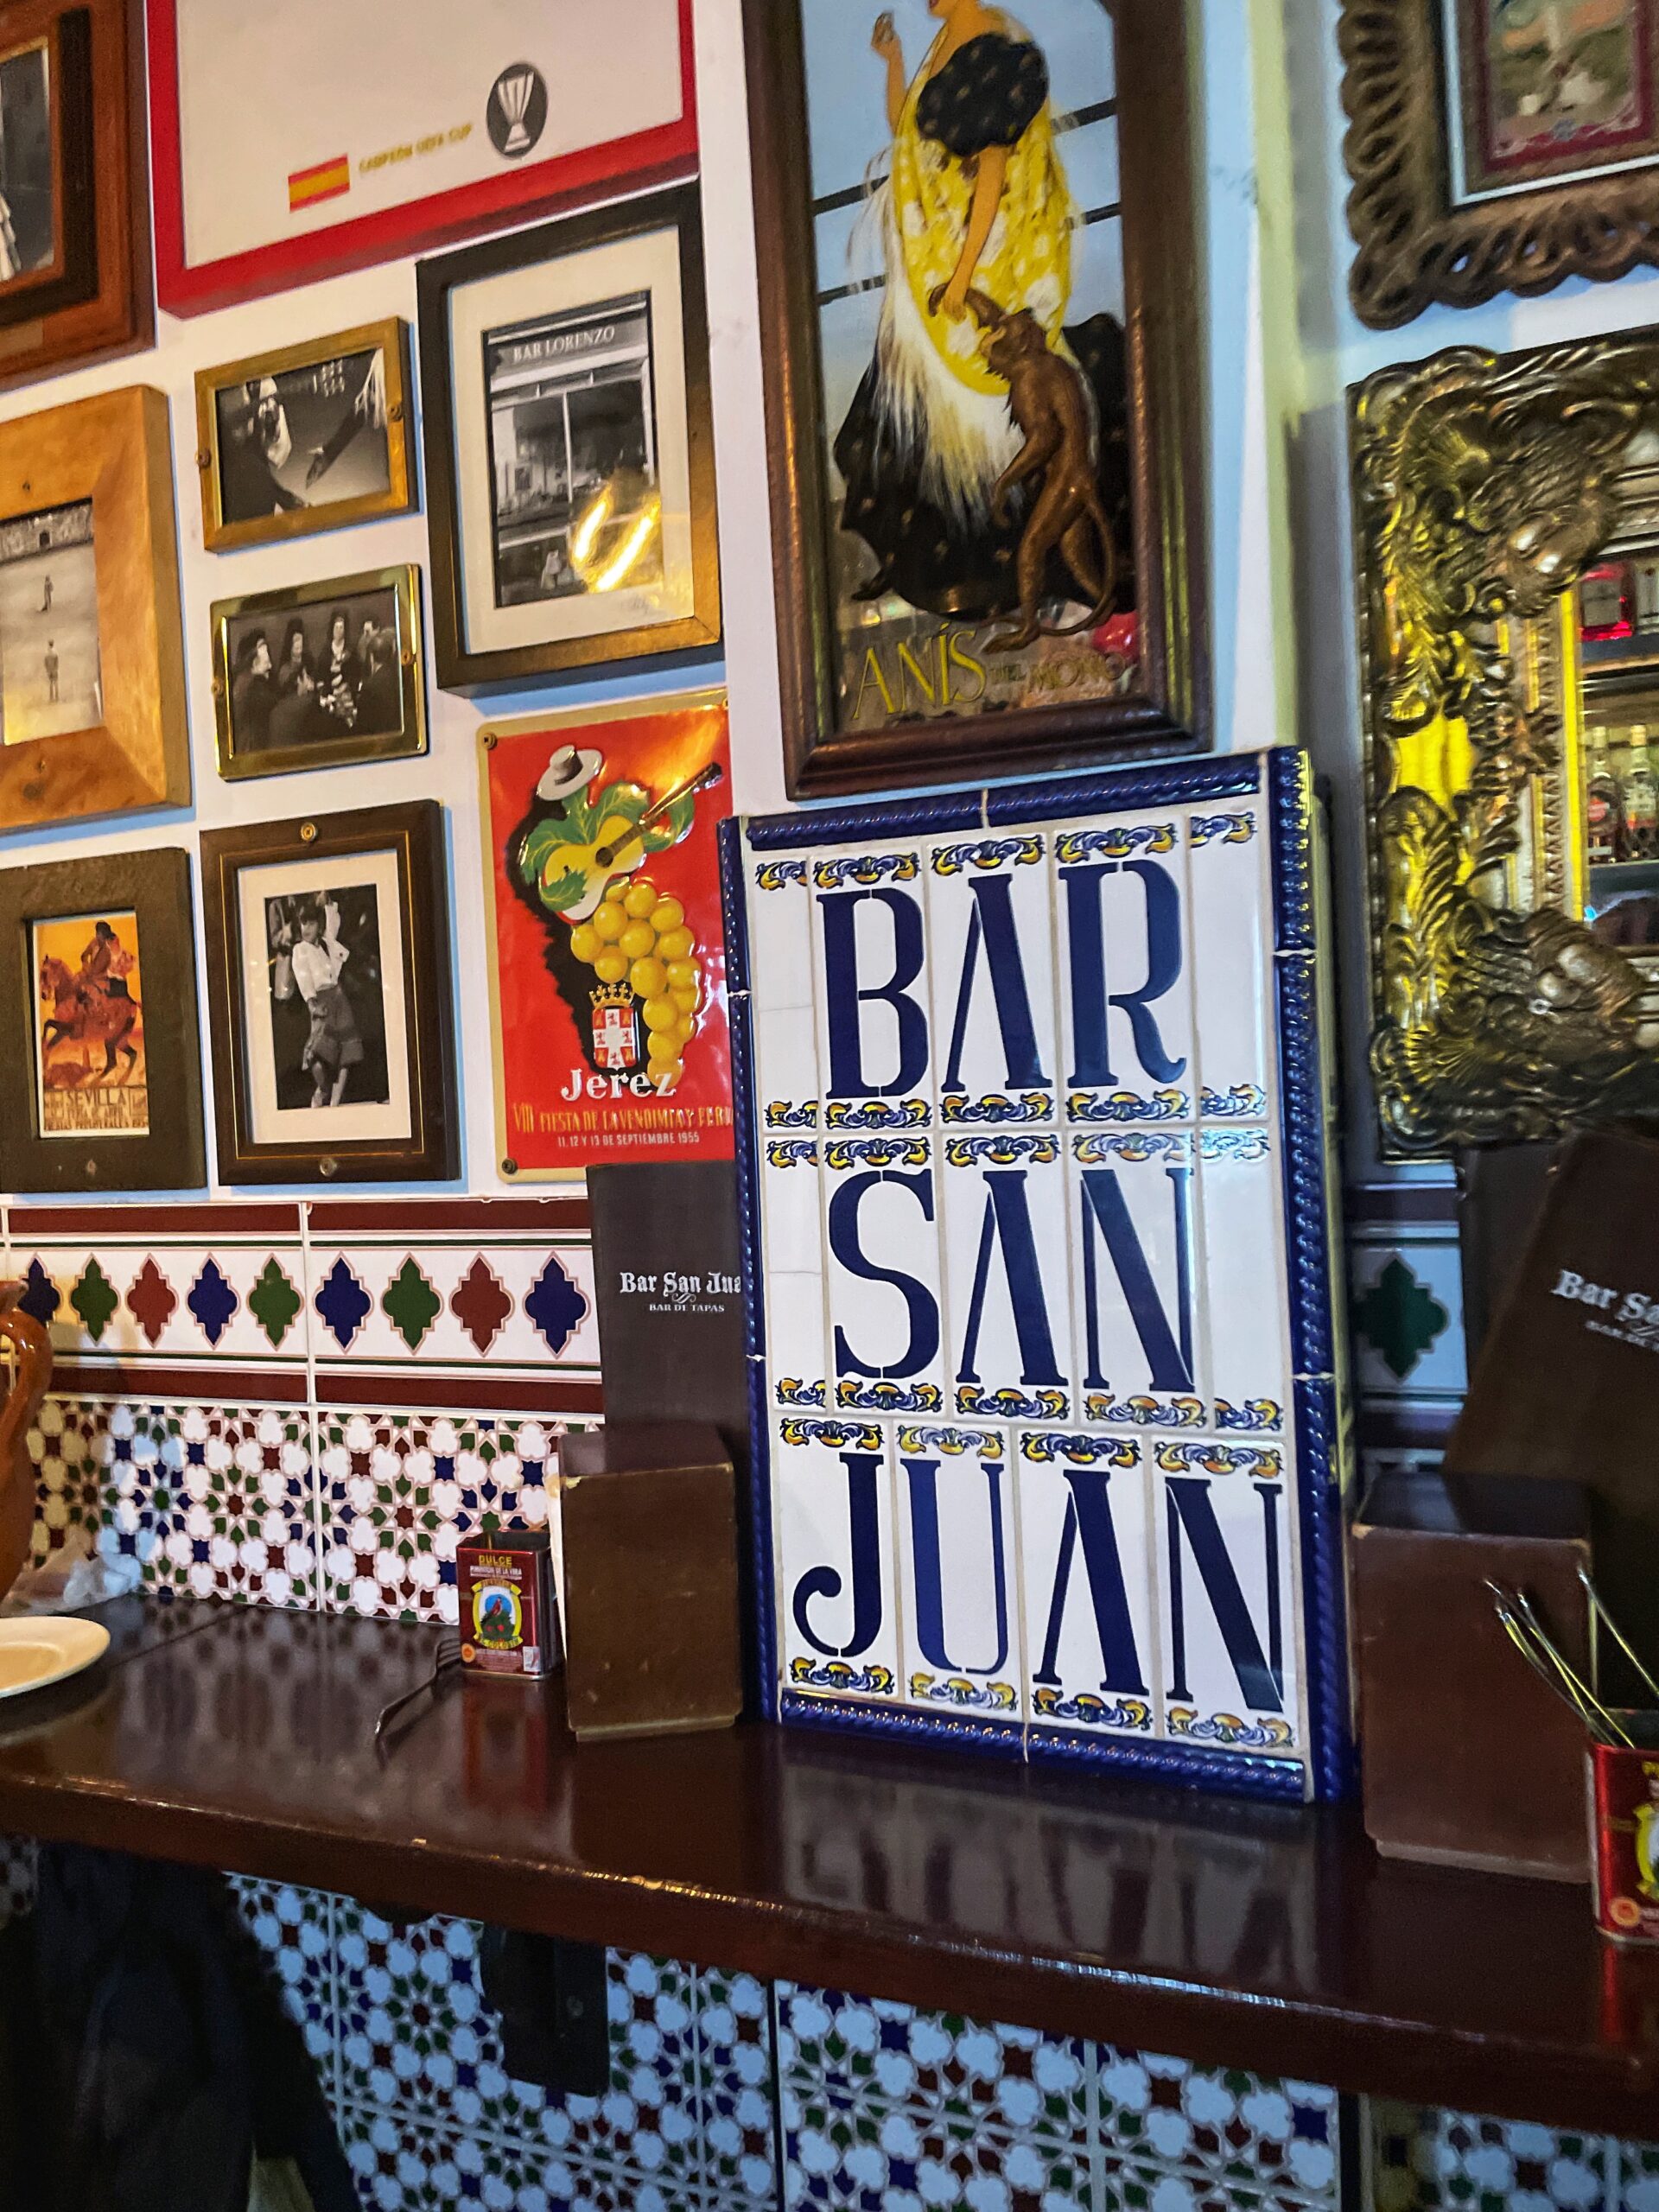 Bar San Juan, a Spanish restaurant in Chorlton